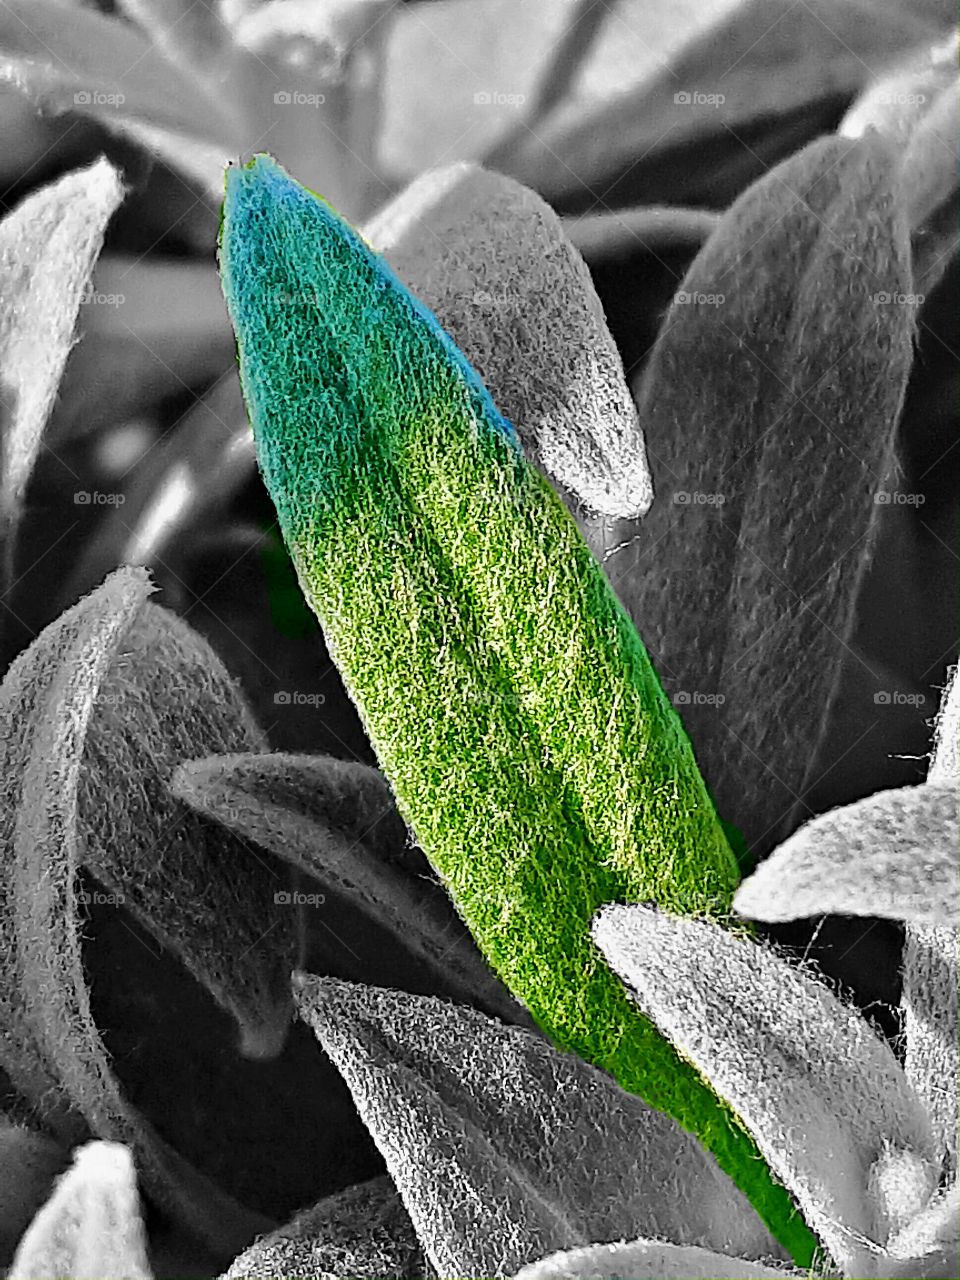 leaf of grass